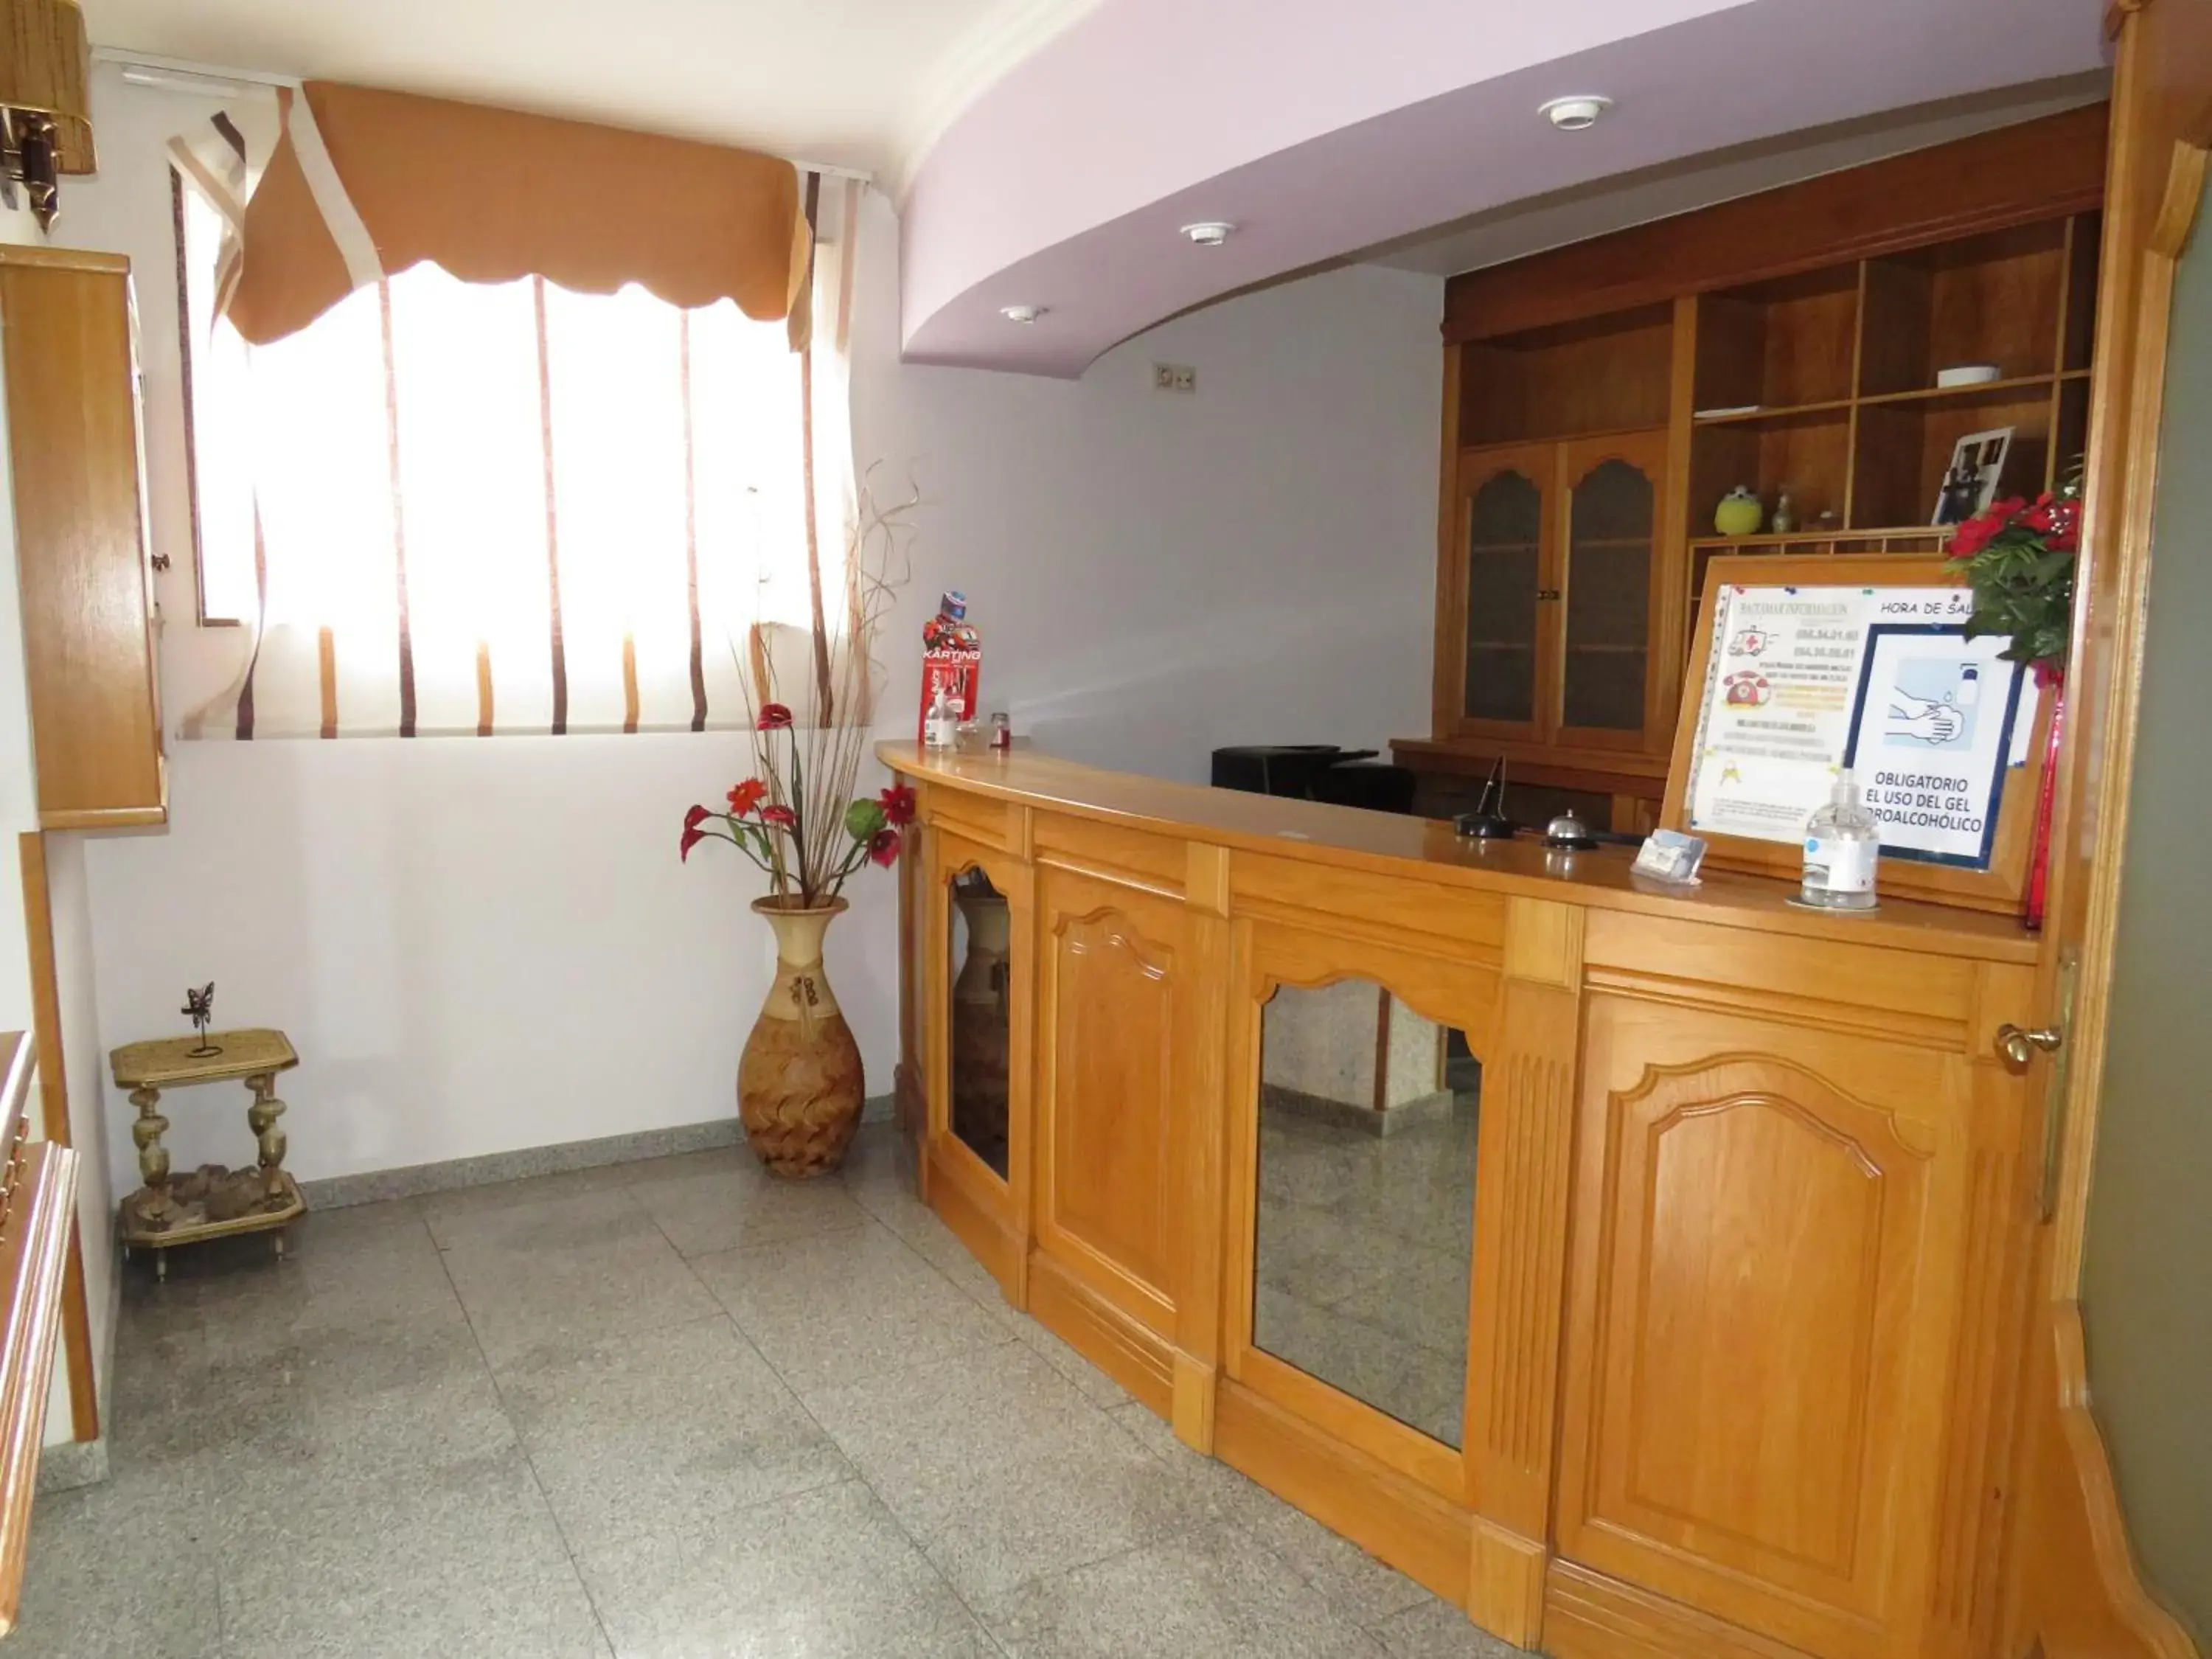 Lobby or reception, Lobby/Reception in Hotel Baixamar